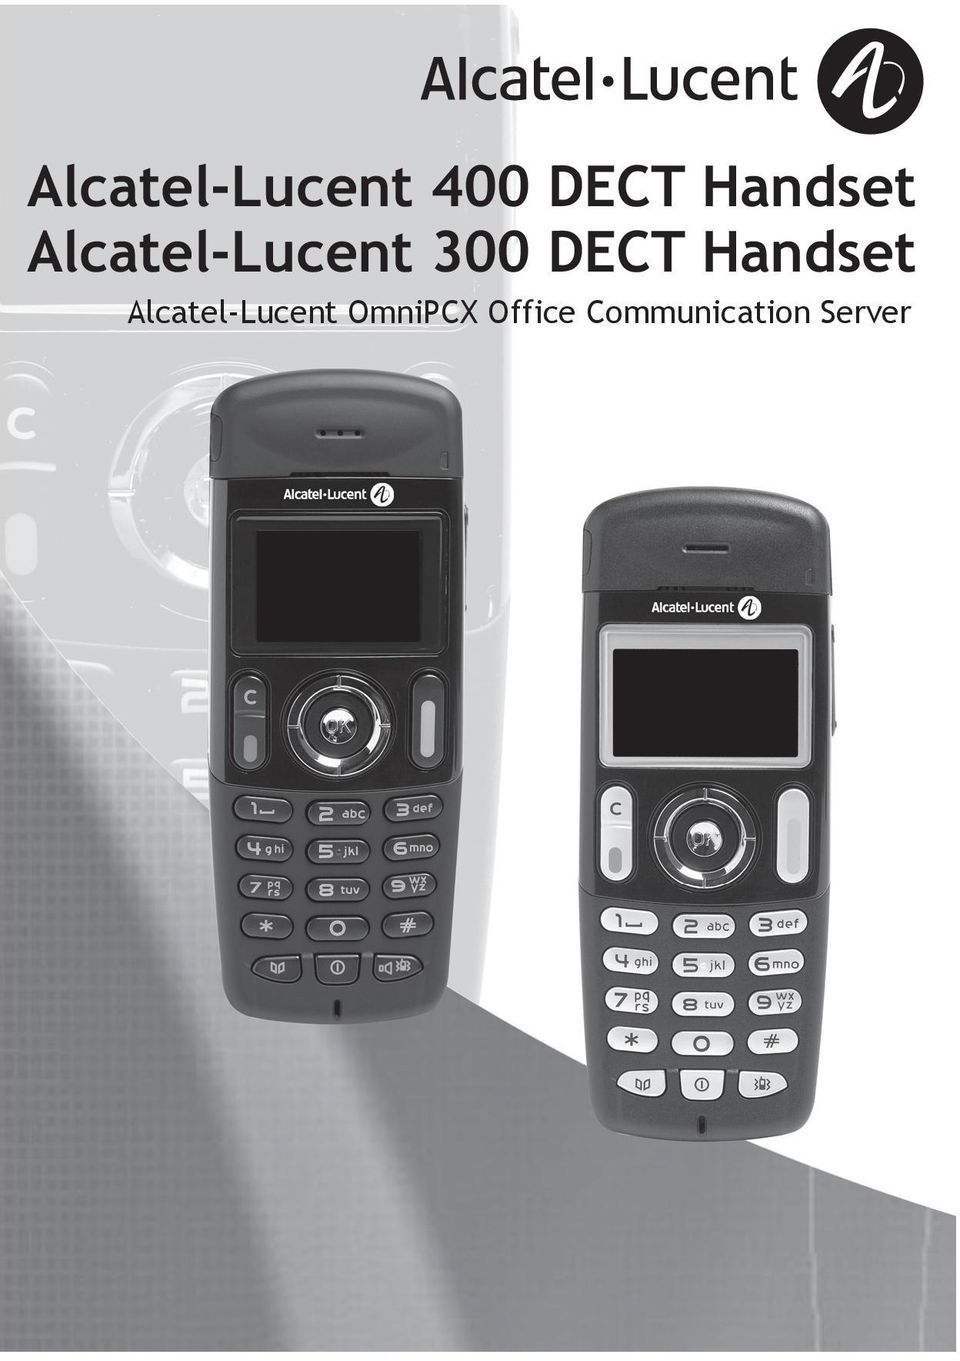 DECT Handset Alcatel-Lucent